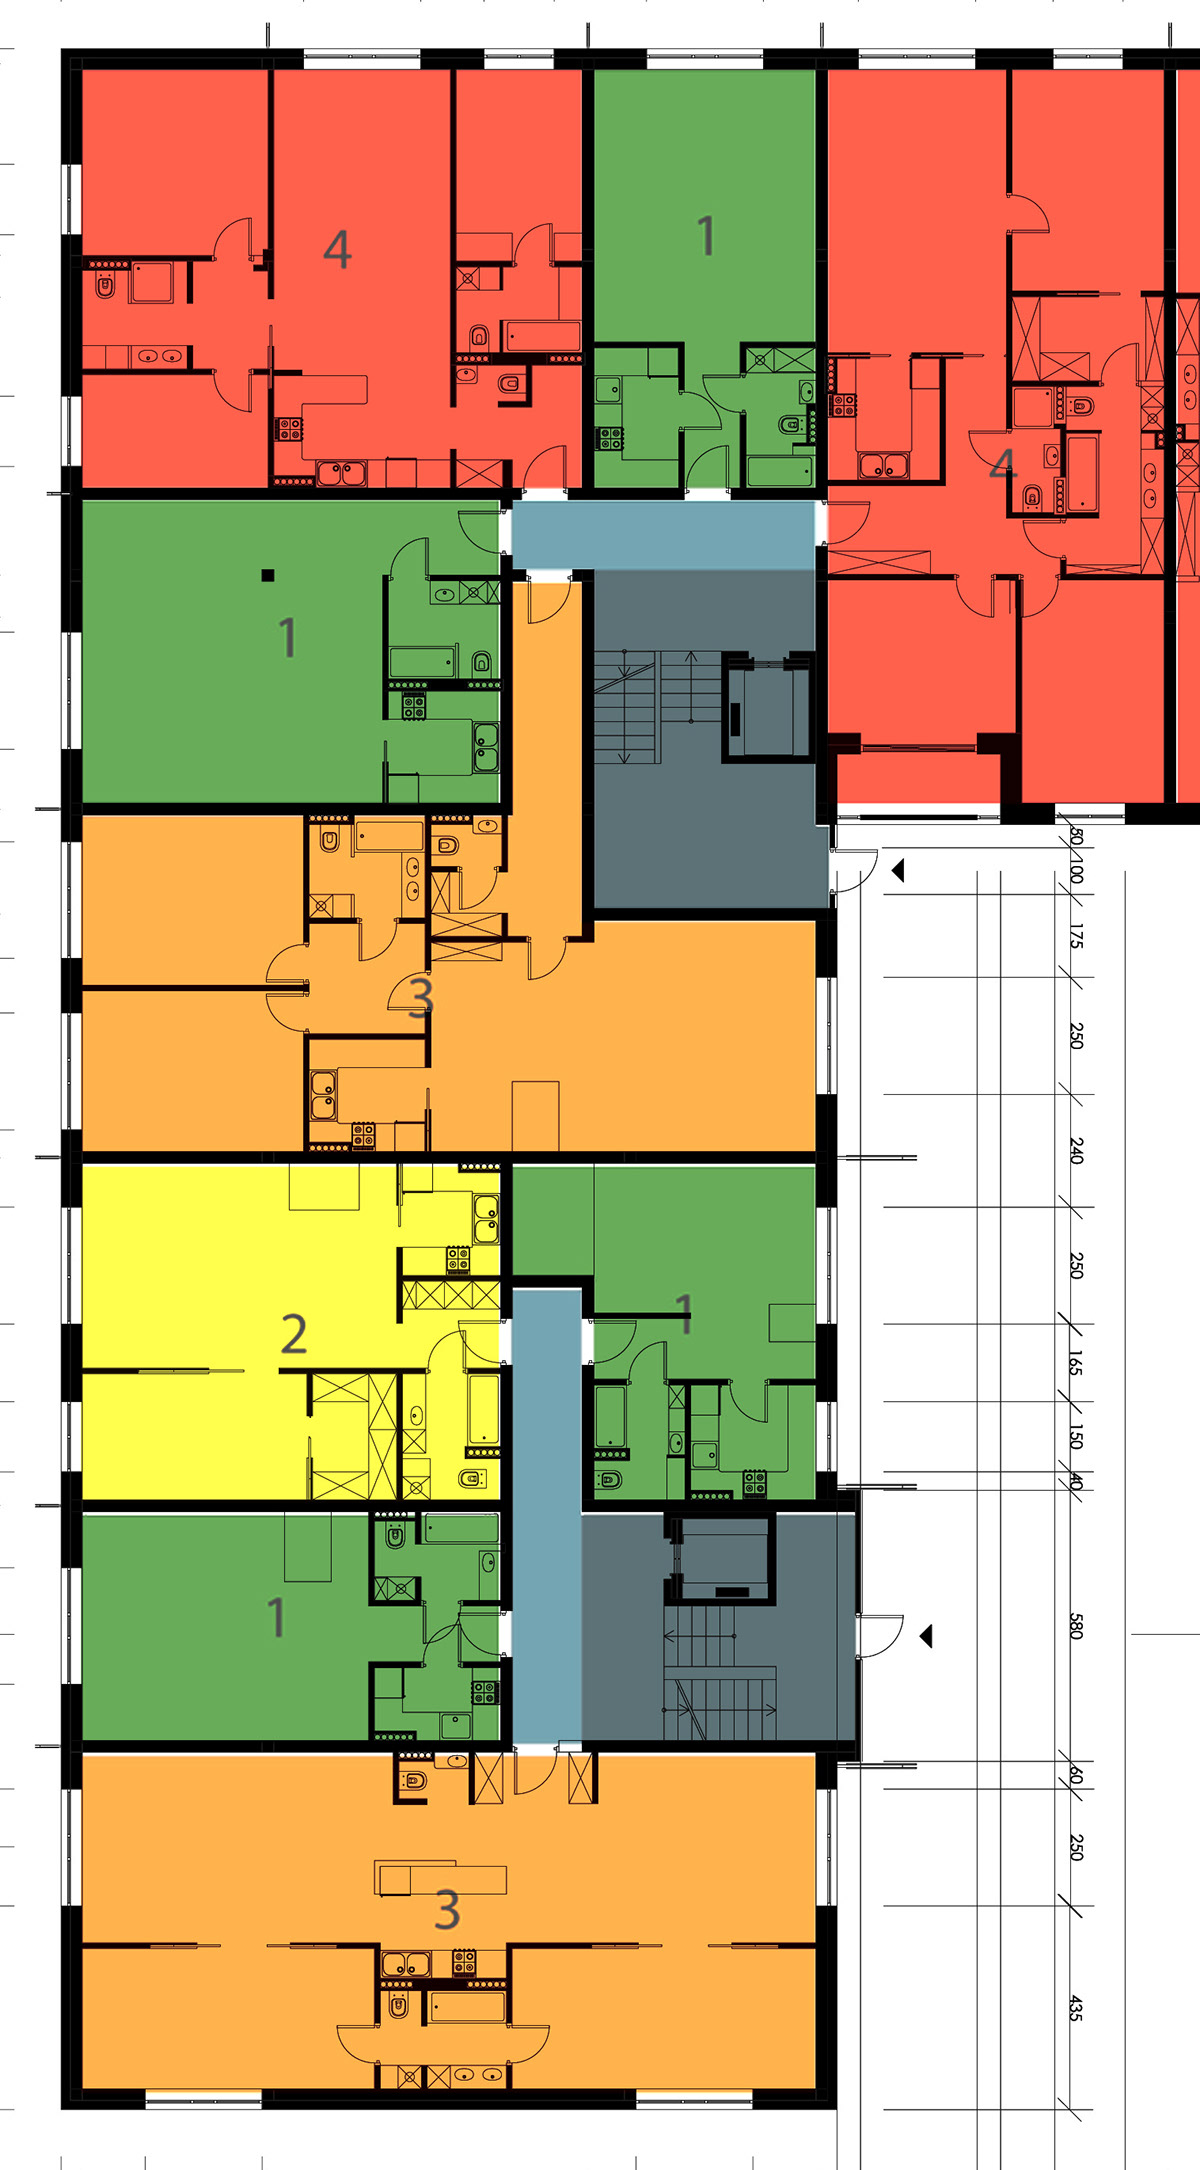 mieszkaniówka budynek wielorodzinny osiedle housing Multi-family building architektura wizualizacja visualisation